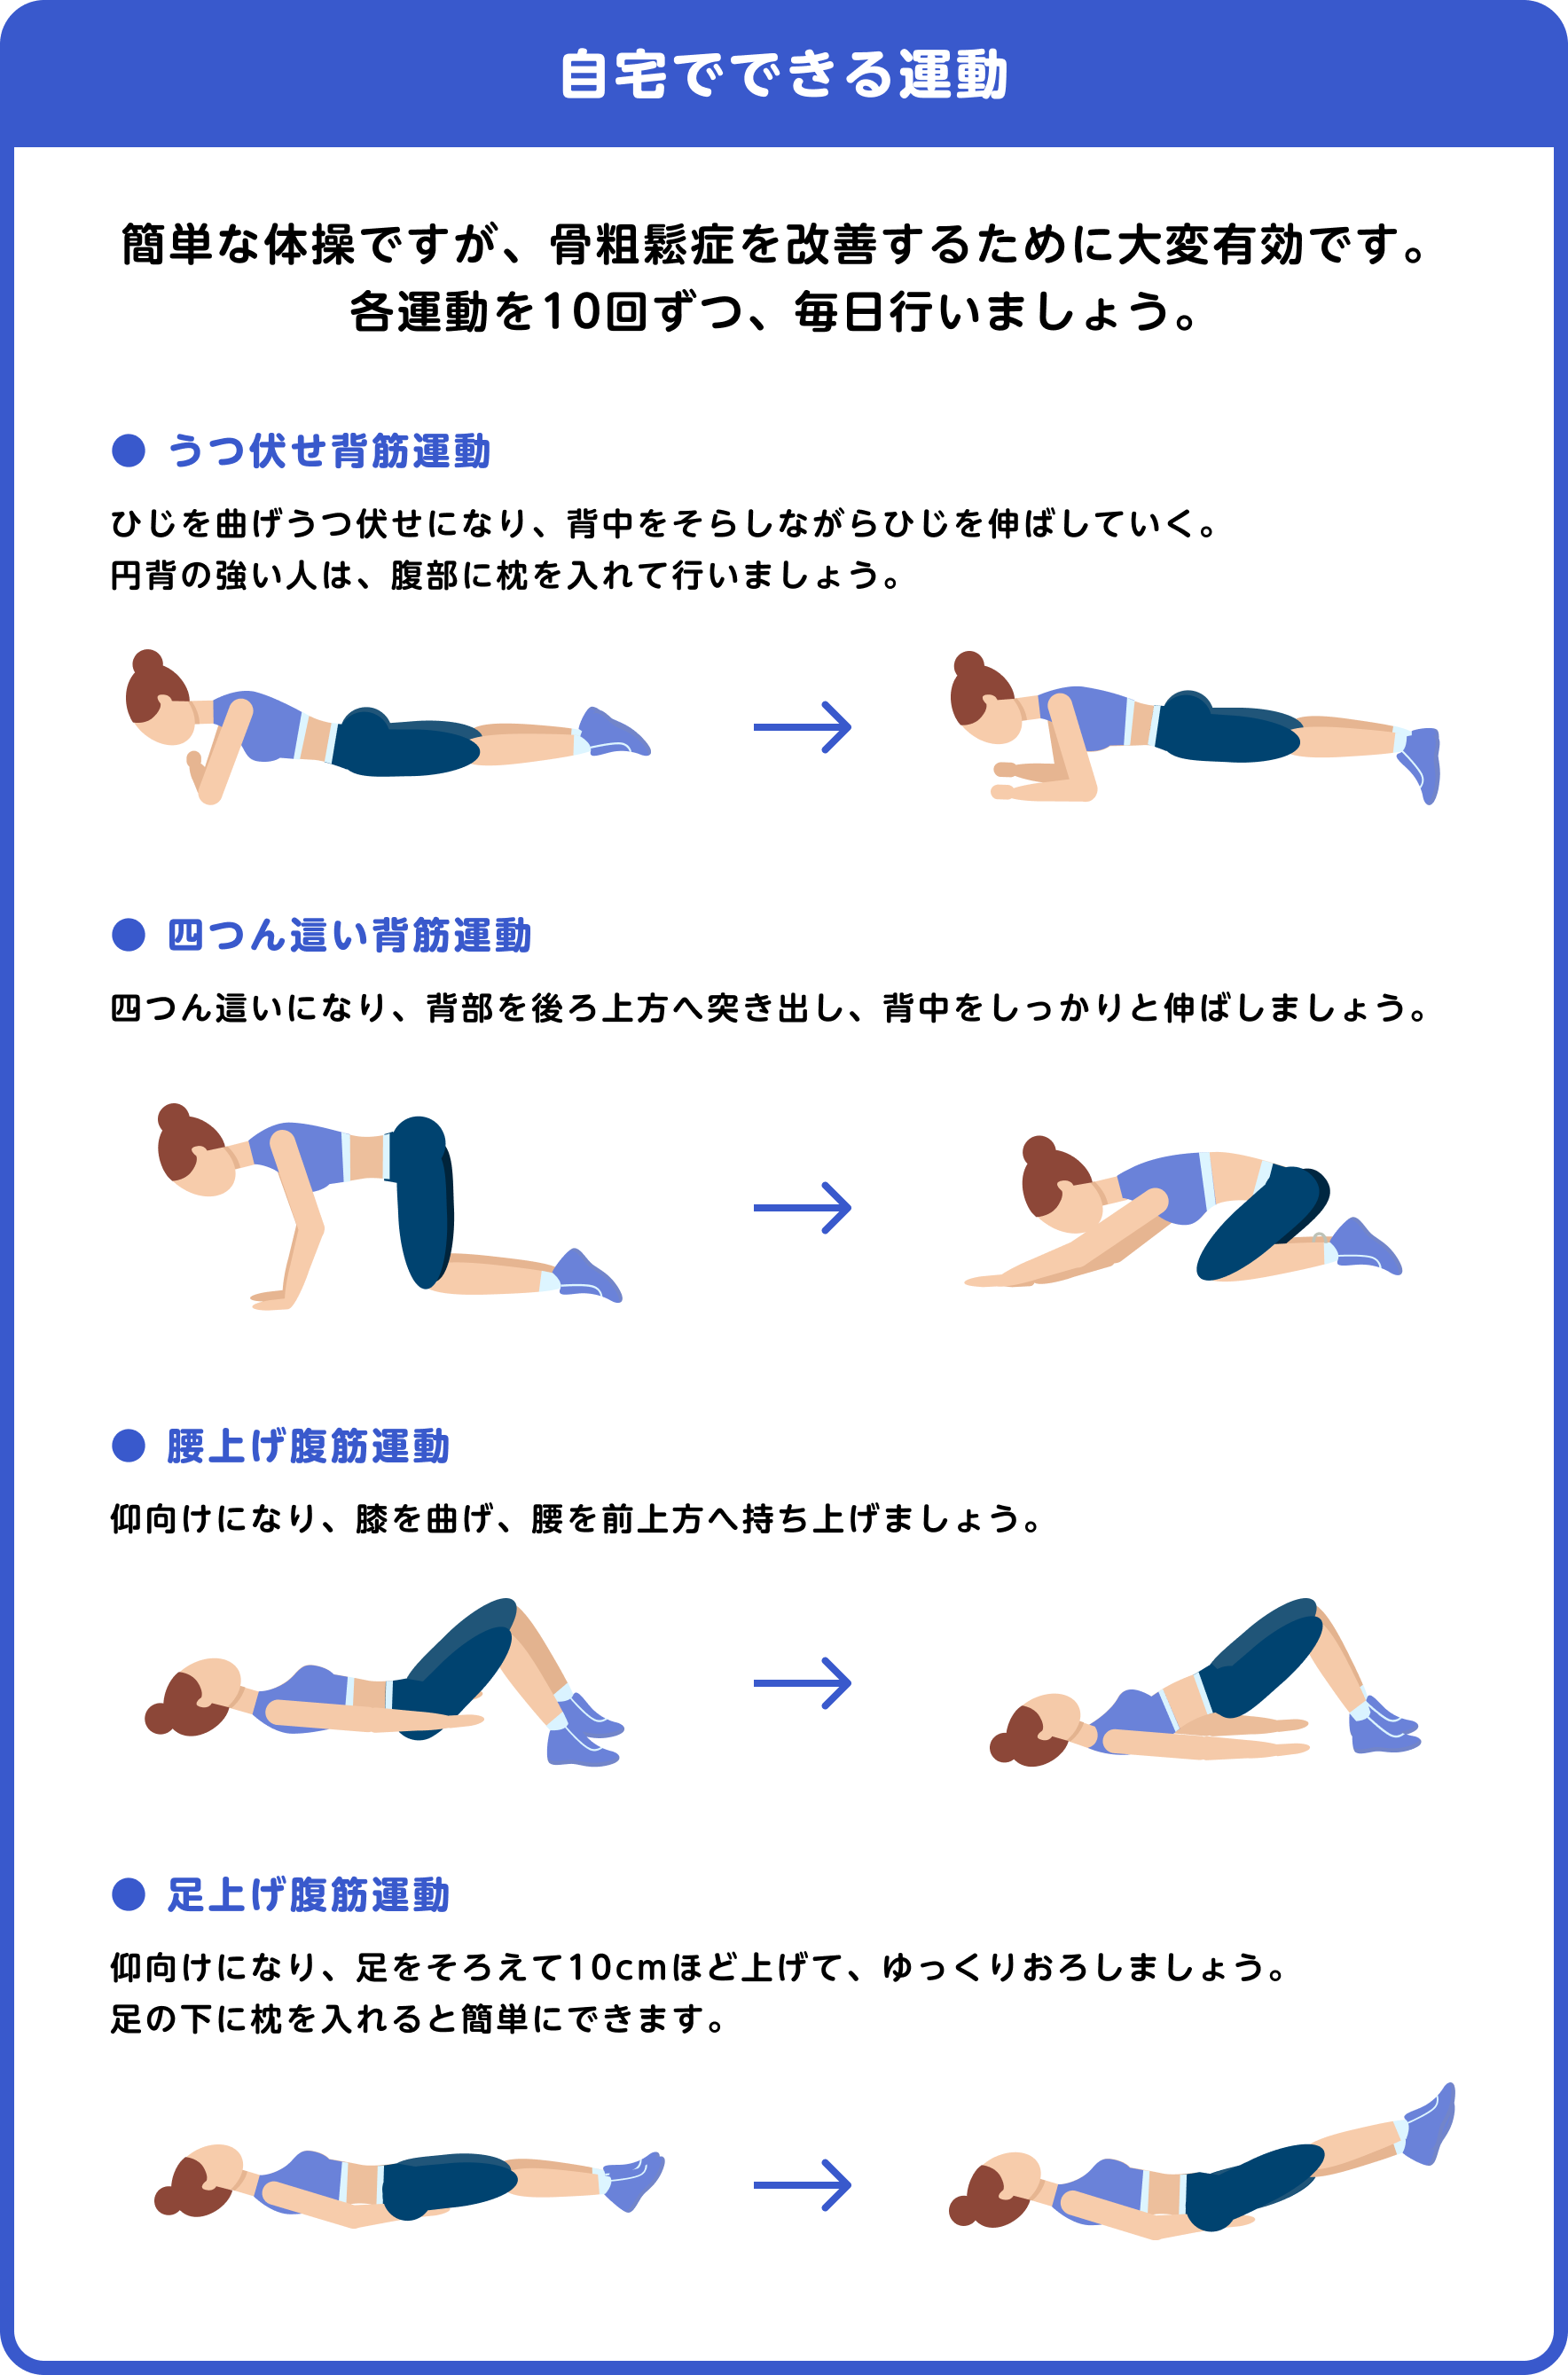 骨粗鬆症財団  https://www.jpof.or.jp/osteoporosis/motion/training.html